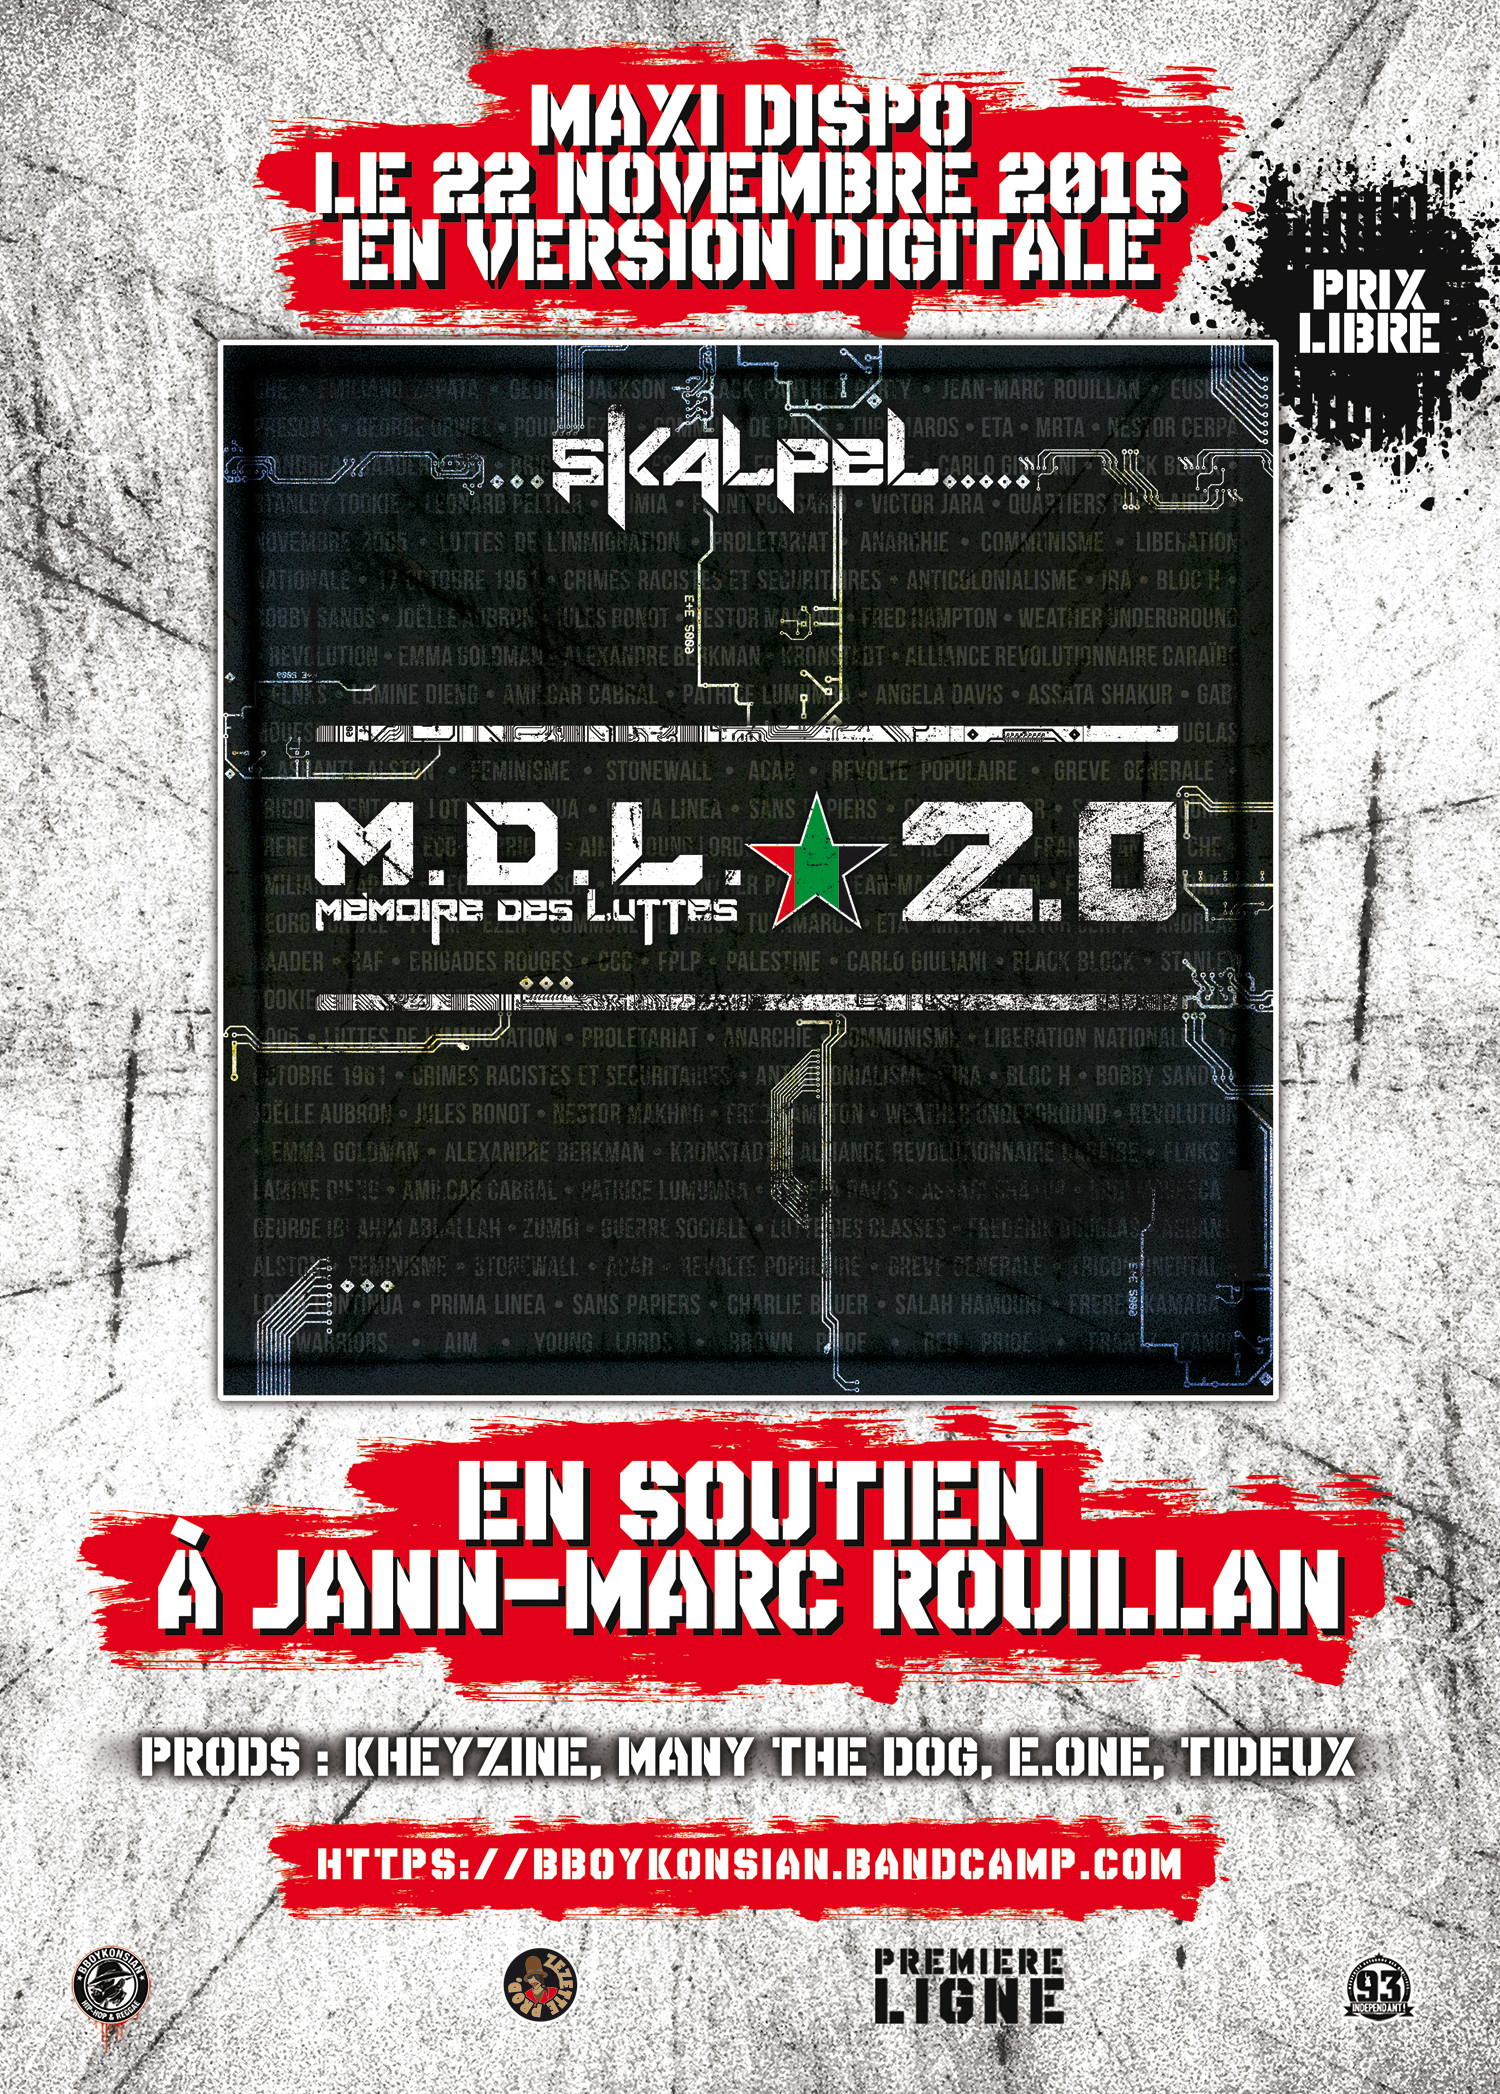 Le maxi 'M.D.L. 2.0' de Skalpel disponible en version digitale